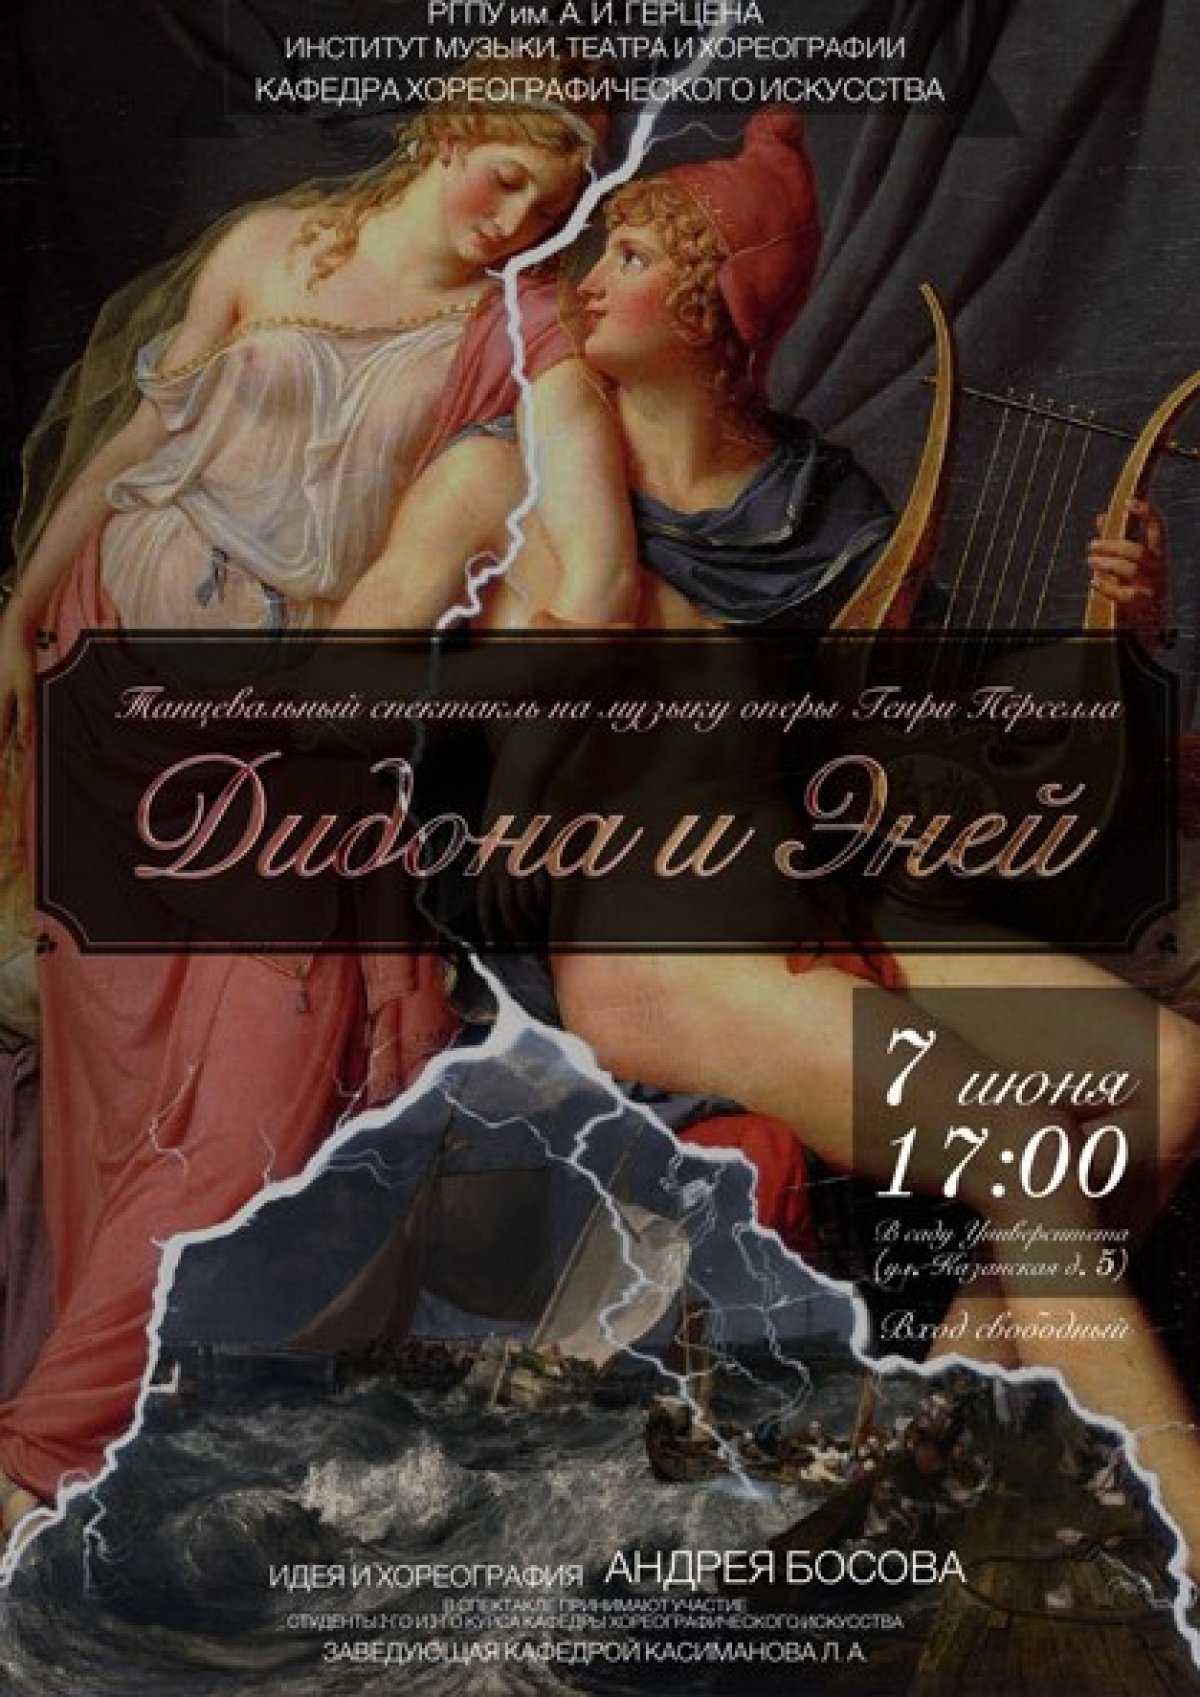 7 июня в 17:00 приглашаем на танцевальный спектакль на музыку оперы Генри Пёрселла «Дидона и Эней»!